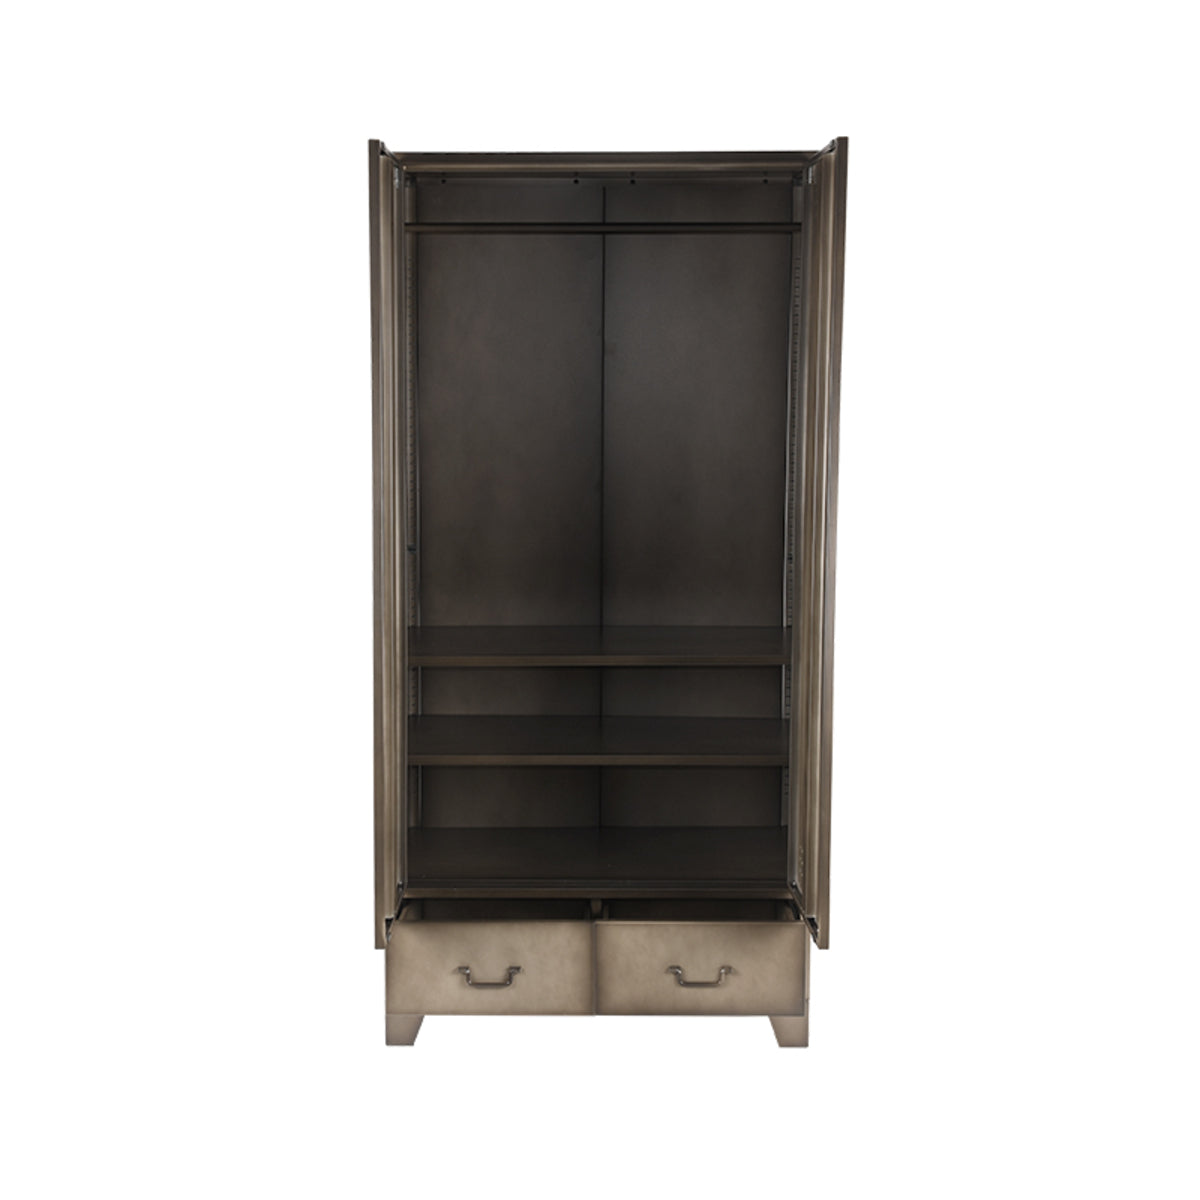 LABEL51 Storage Cabinet Fence - Vintage Metal - Metal - 2-Door